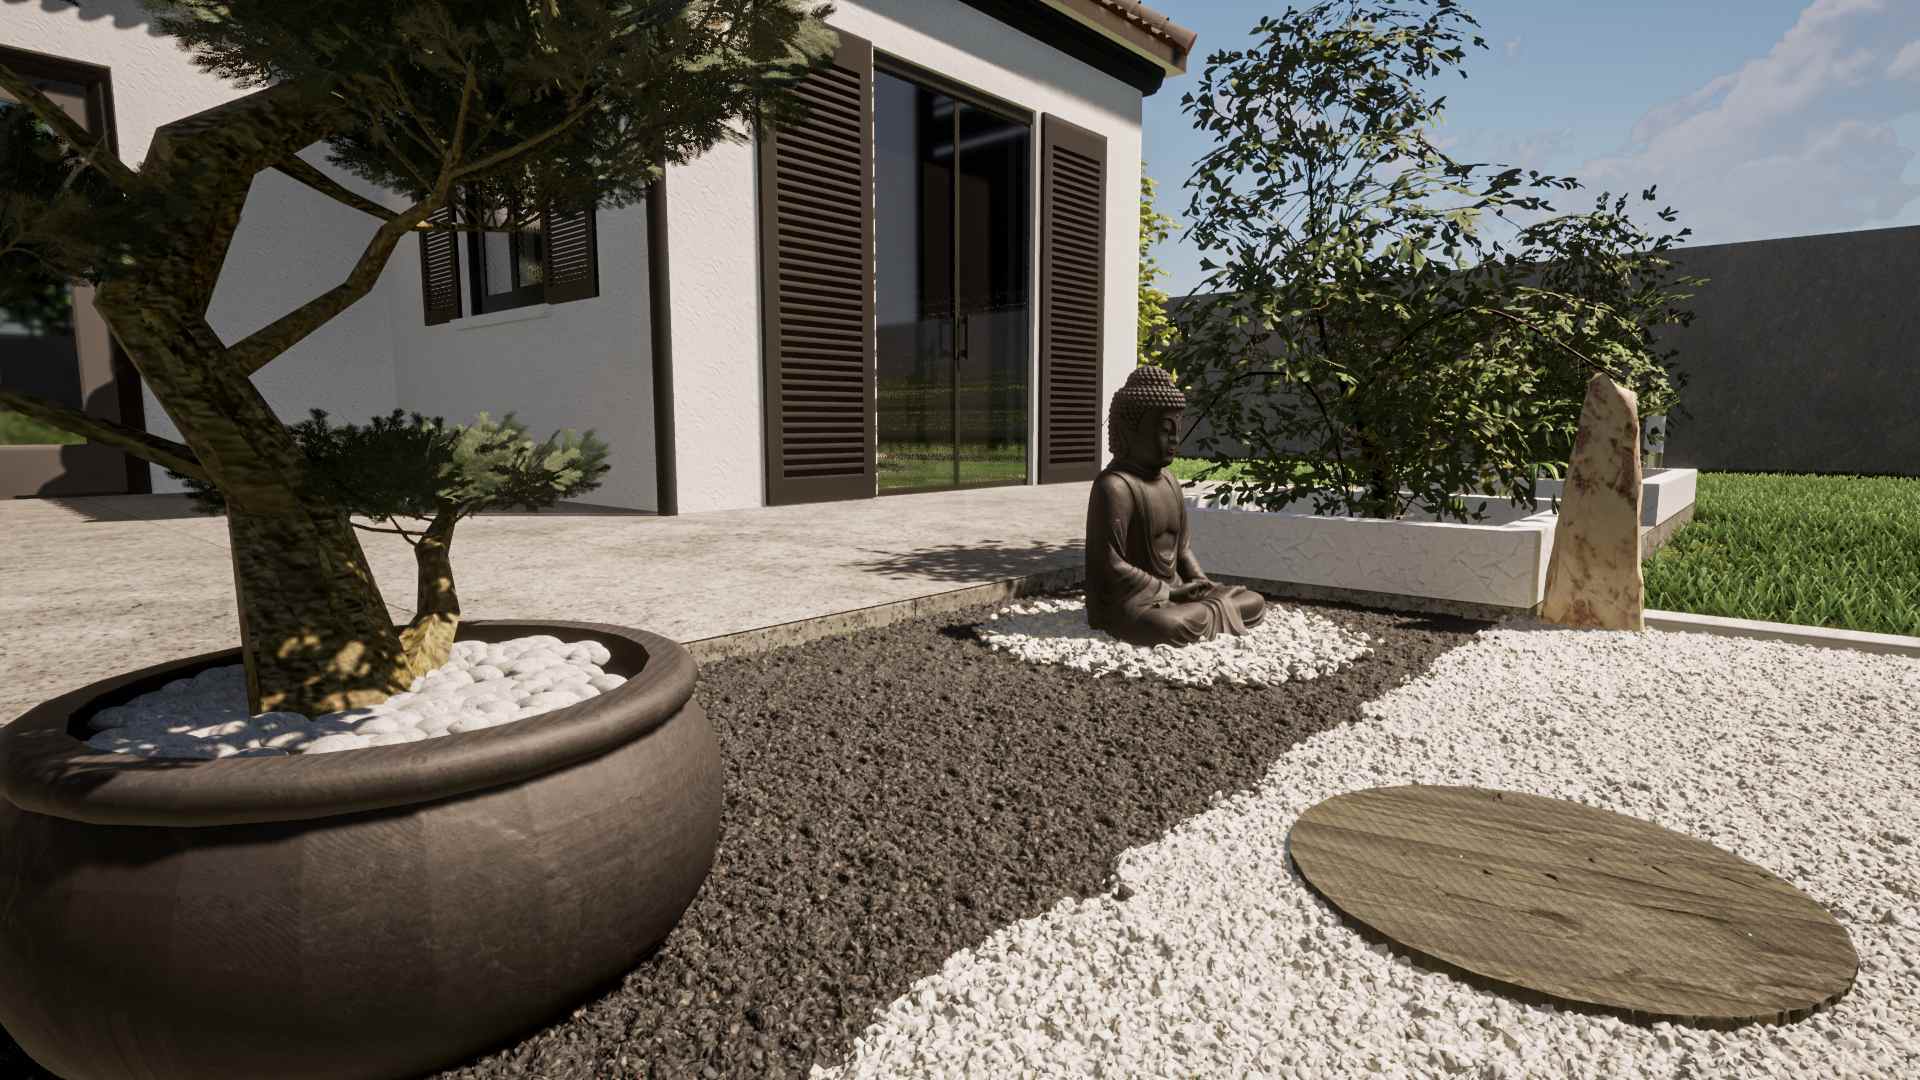 jardin zen